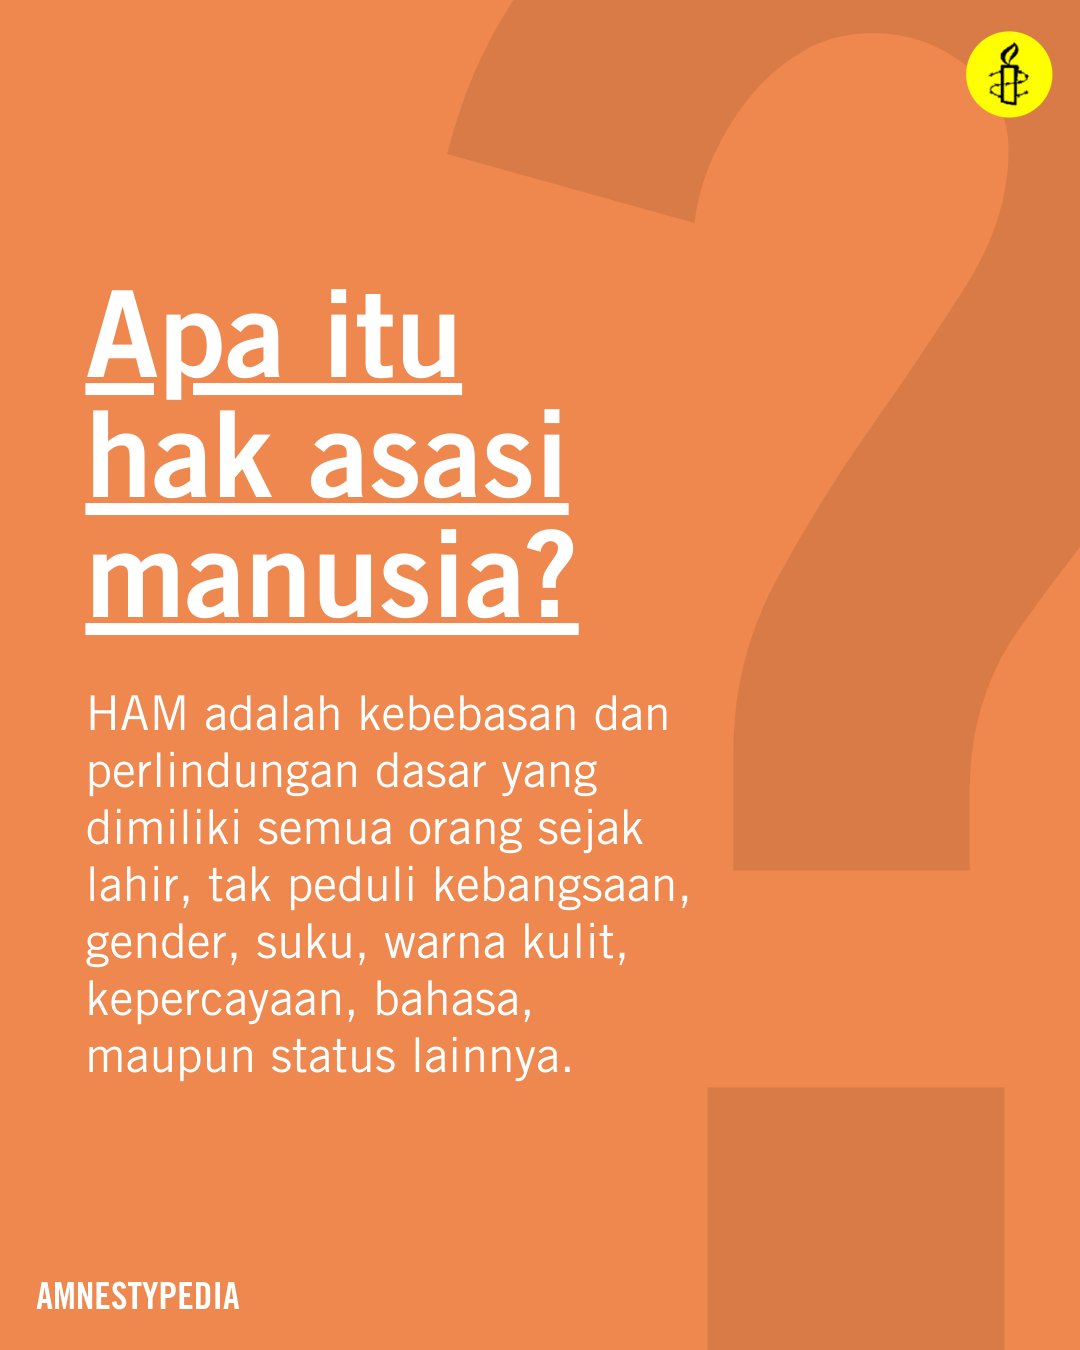 Amnesty International Indonesia On Twitter Ham Adalah Kebebasan Dan Perlindungan Dasar Yang Dimiliki Semua Orang Sejak Lahir Apapun Kebangsaan Gender Suku Warna Kulit Kepercayaan Bahasa Maupun